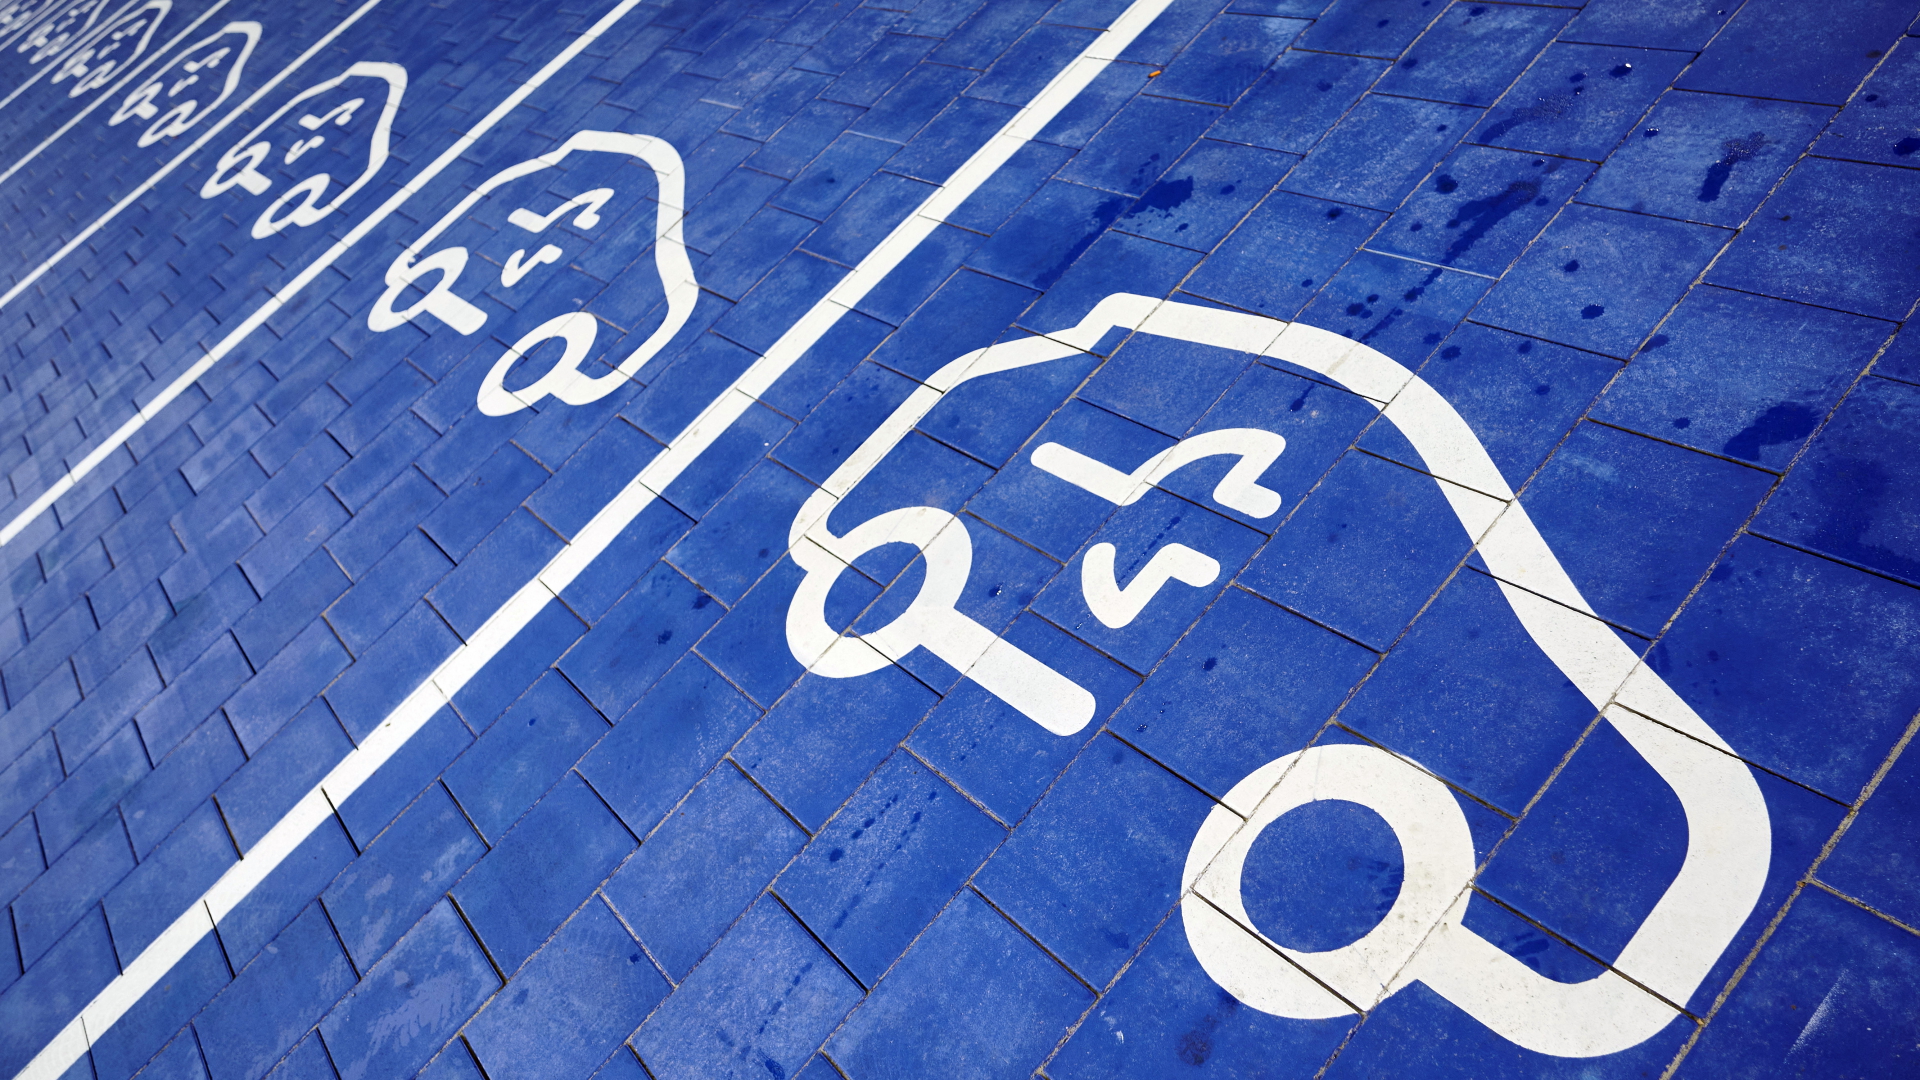 Symbole für Elektroautos sind auf Parkplätze gemalt | dpa